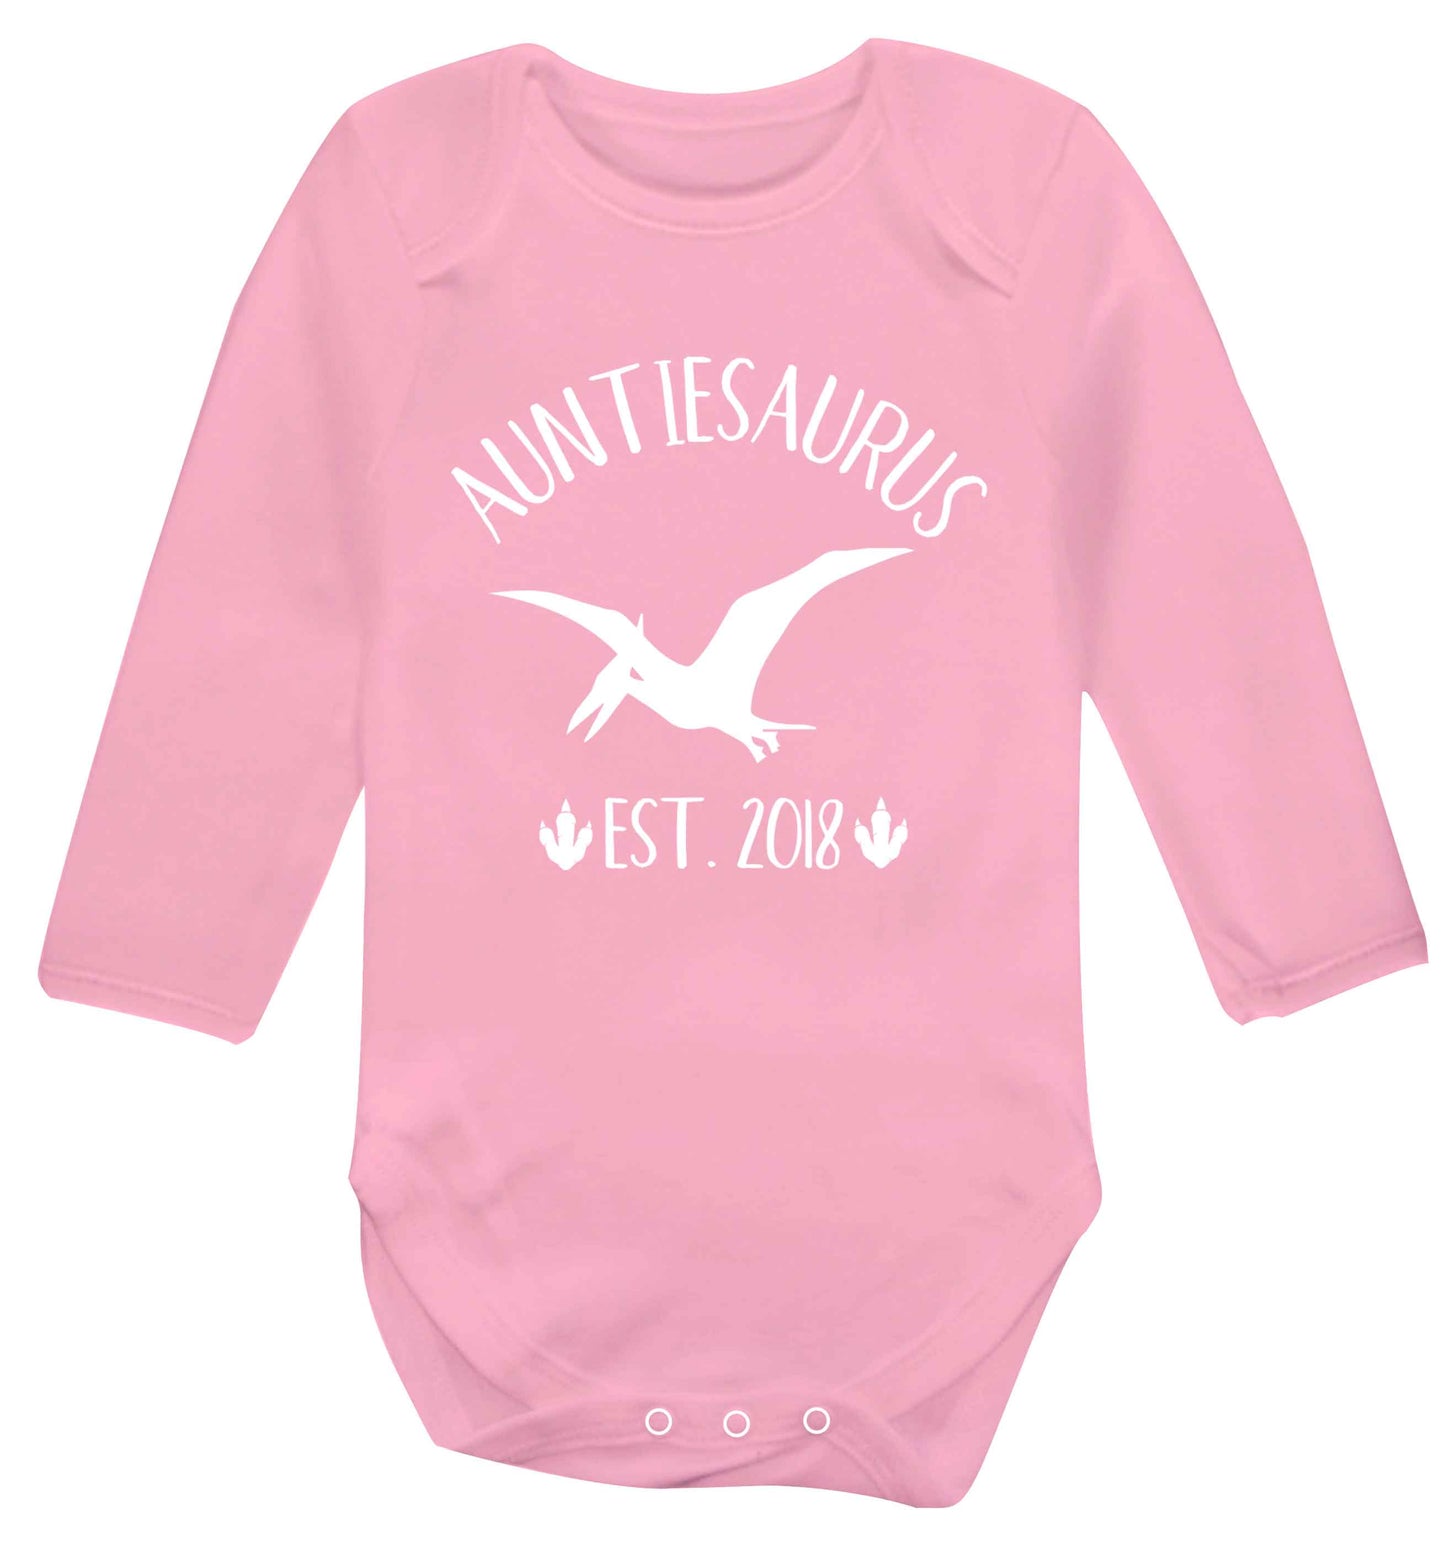 Personalised auntiesaurus since (custom date) Baby Vest long sleeved pale pink 6-12 months